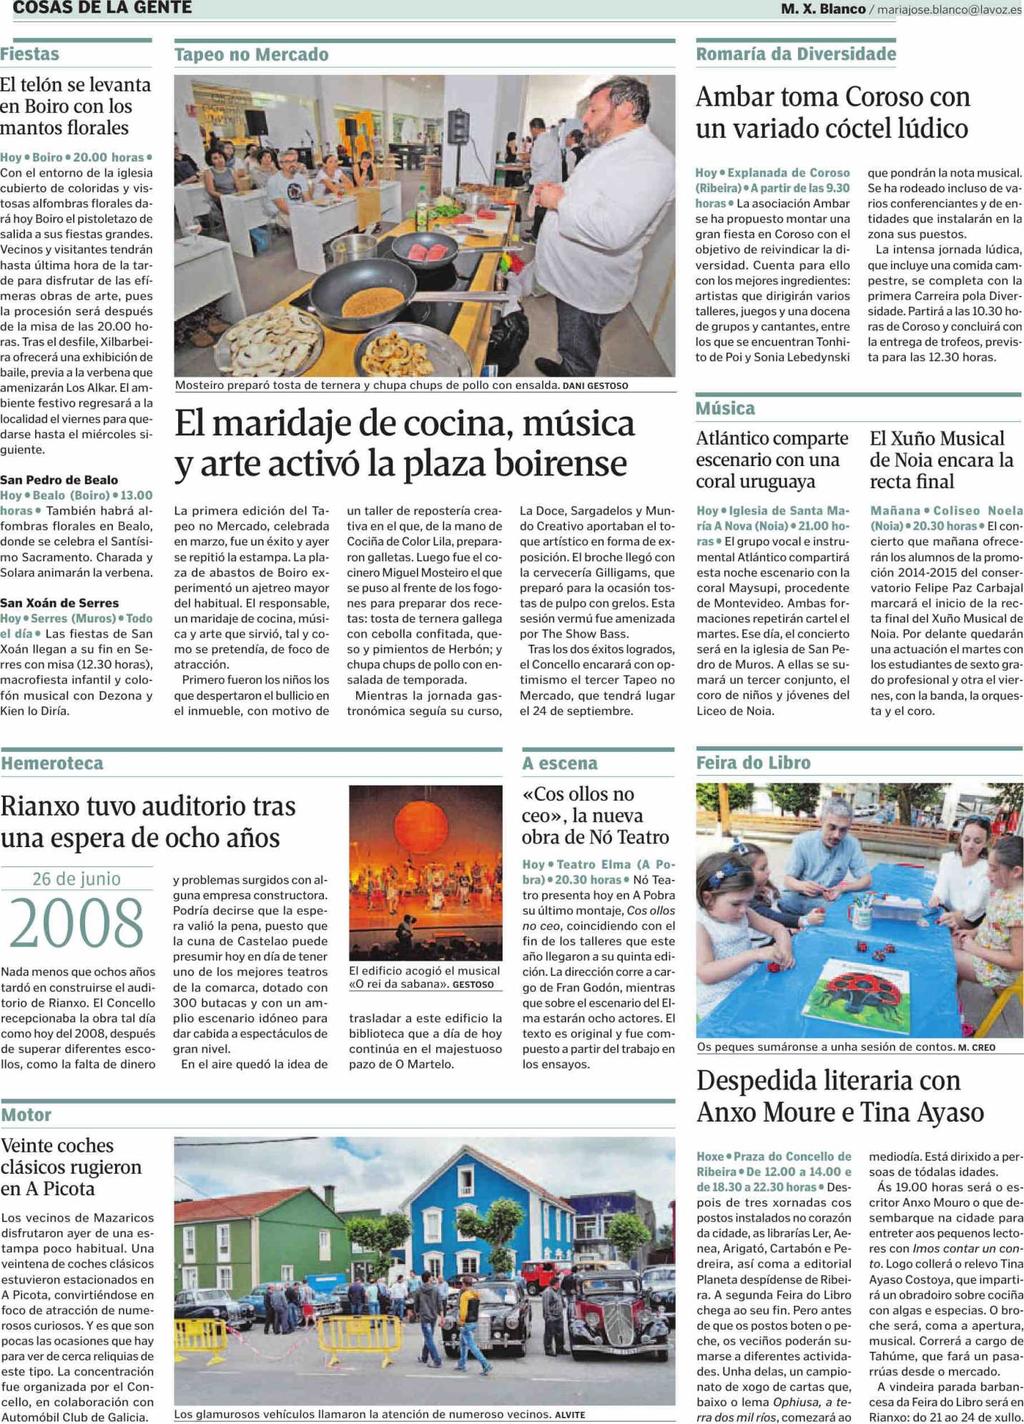 La Voz de Galicia (Barbanza) La Coruña Prensa: Tirada: